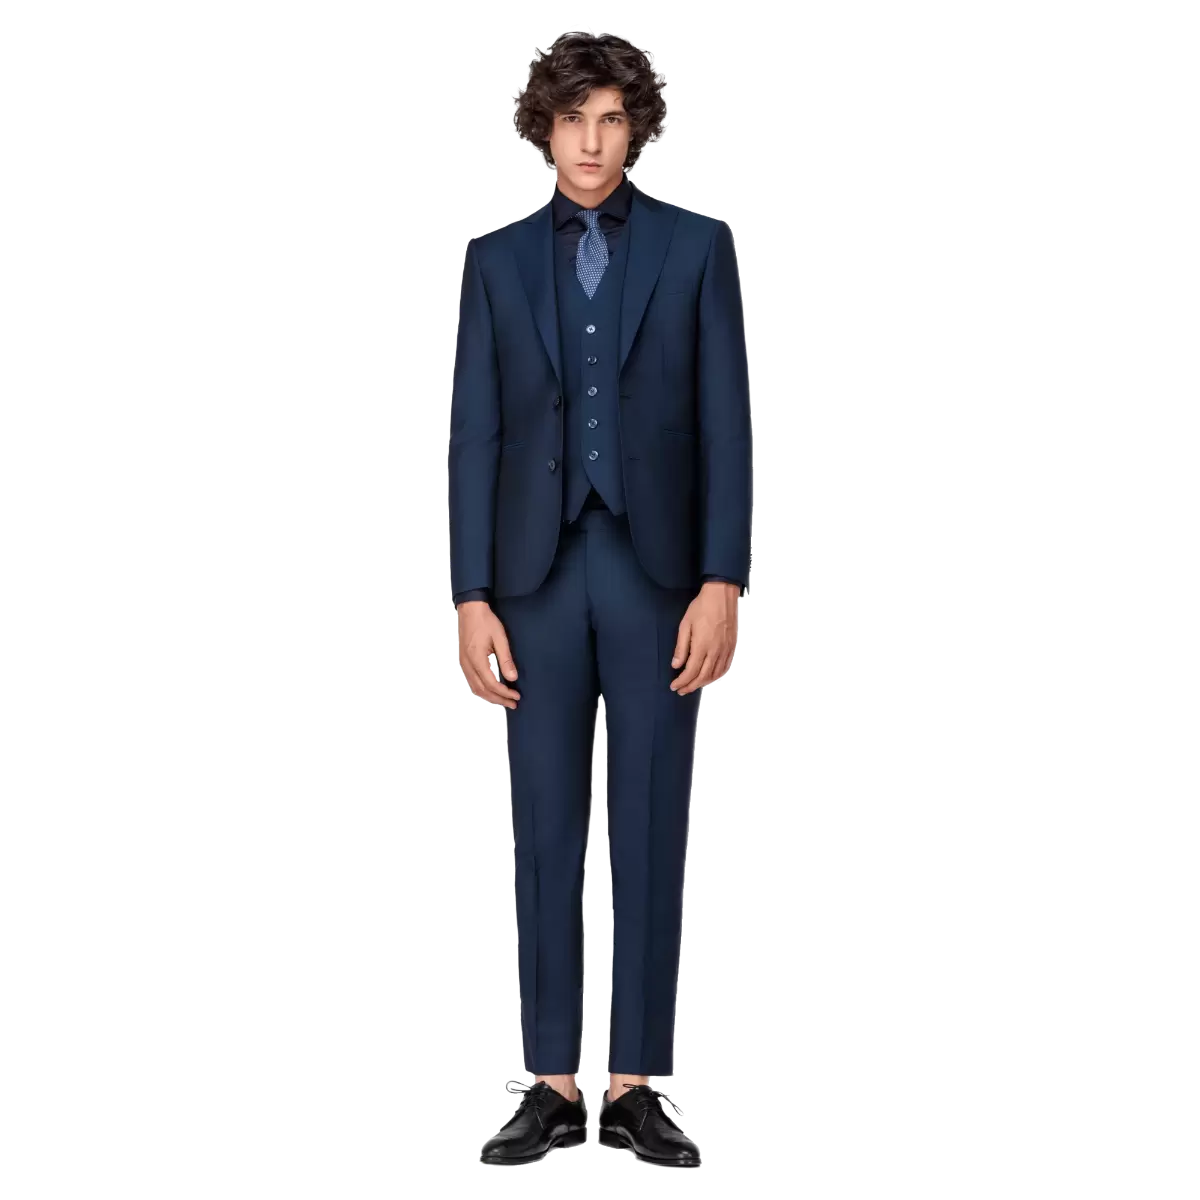 Men's Royal Blue 3 Piece Suit | Italian Suits for Men